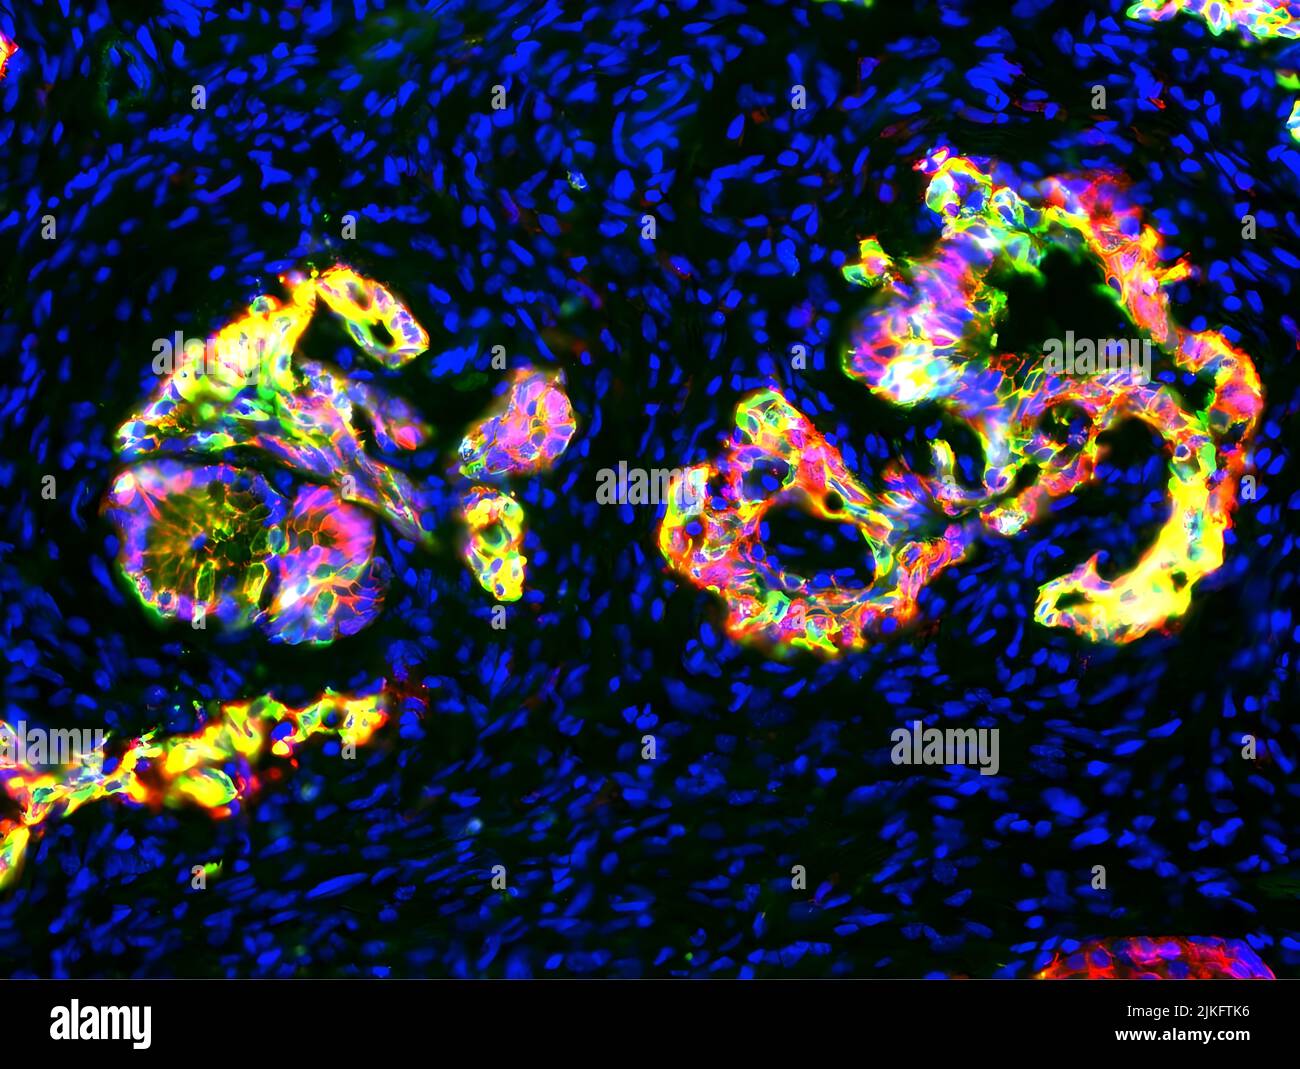 In diesem auffälligen Bild, das in der Research as Art-Ausstellung der University of Utah von 2016 gezeigt wurde, zeigt Rot ein Keratin-Protein, das im Zytoskelett präkanzerer Zellen gefunden wurde, Grün, ein Zelladhäsionsprotein namens E-Cadherin und das Eigelb, die Bereiche, in denen die beiden Proteine vorhanden sind. Schließlich markiert Blau die Zellkerne von reichlich vorhandenen Immunzellen und Fibroblasten, die gewachsen sind und das Organ infiltriert haben, wie ein Tumor gebildet hat. Gemeinsam zeichnen sie ein faszinierendes neues Porträt des Pankreas-duktalen Adenokarzinoms (PDAC), der häufigsten Form von Bauchspeicheldrüsenkrebs. Stockfoto